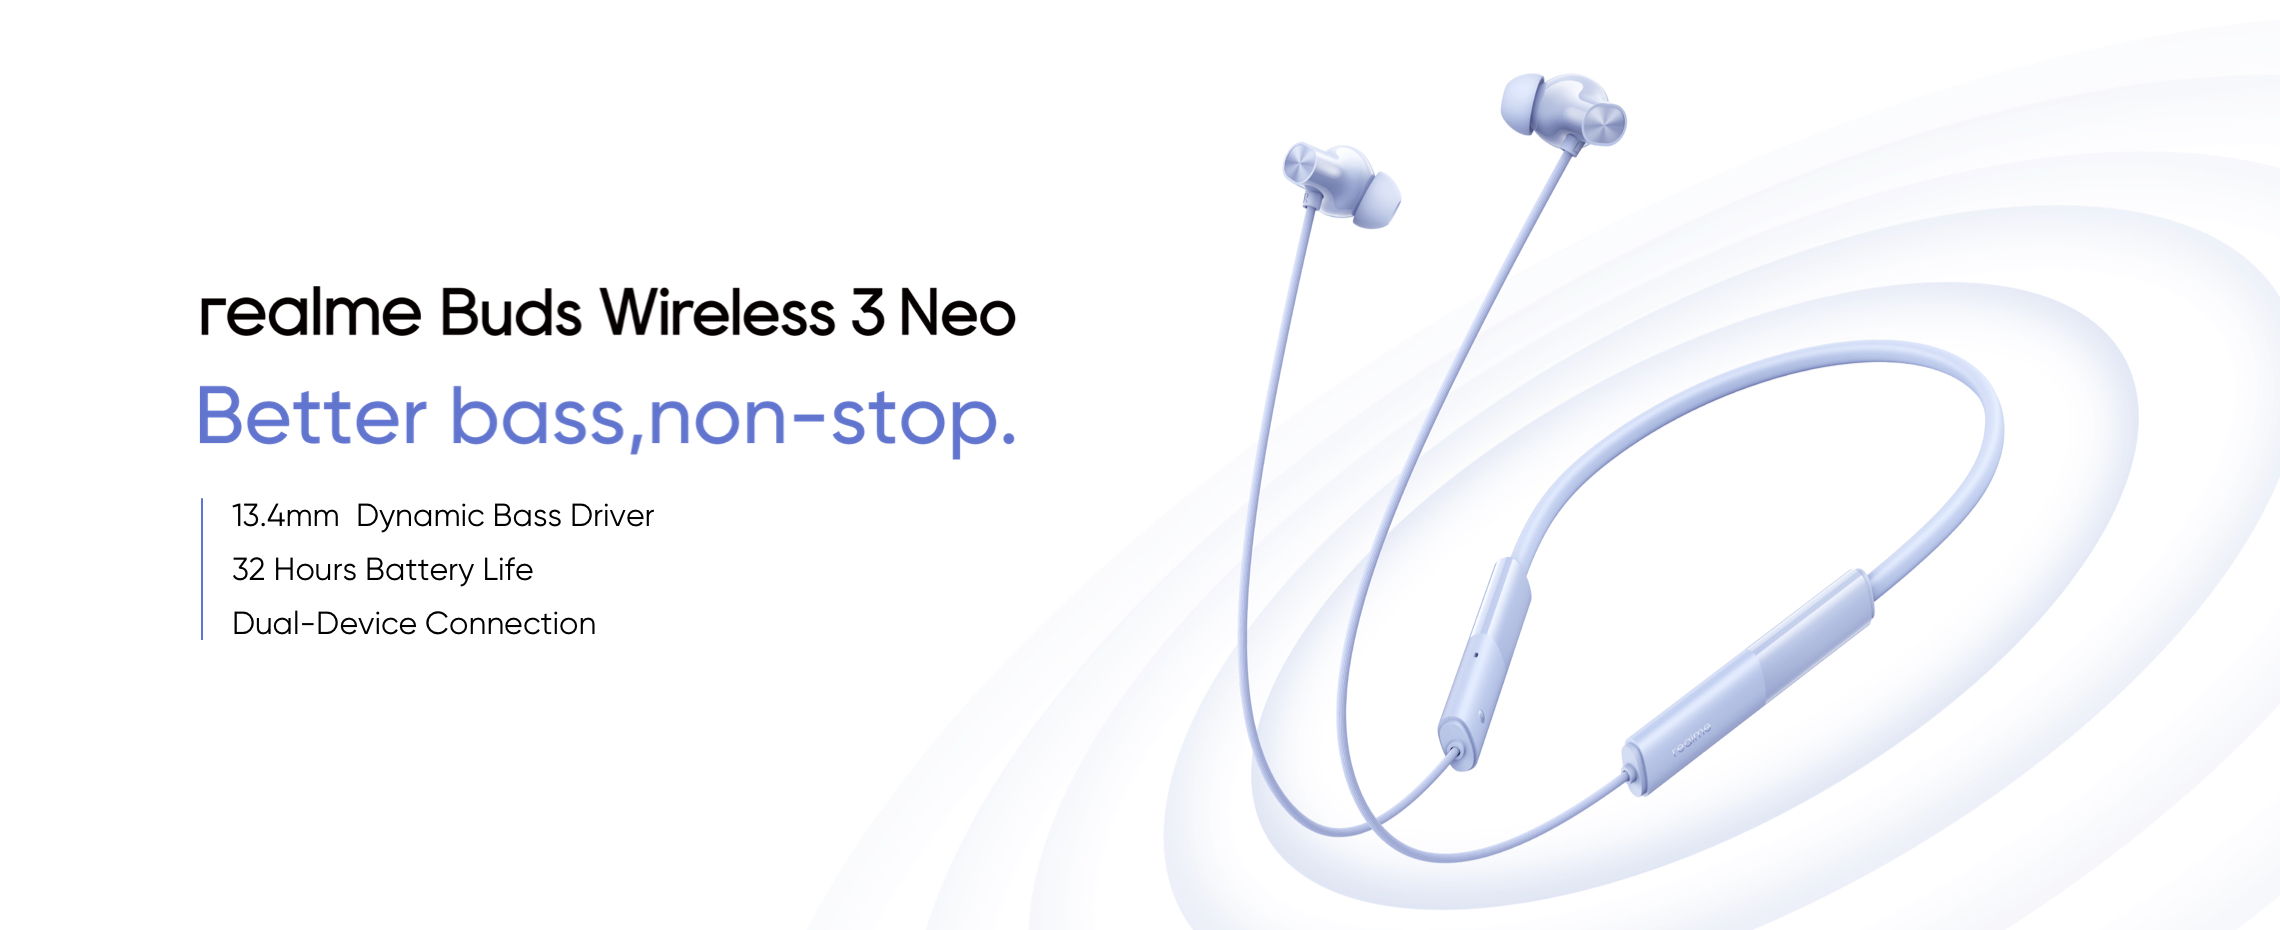 realme annoncerede Buds Wireless 3 Neo med Bluetooth 5.4, Google Fast Pair og op til 32 timers batteritid til $16